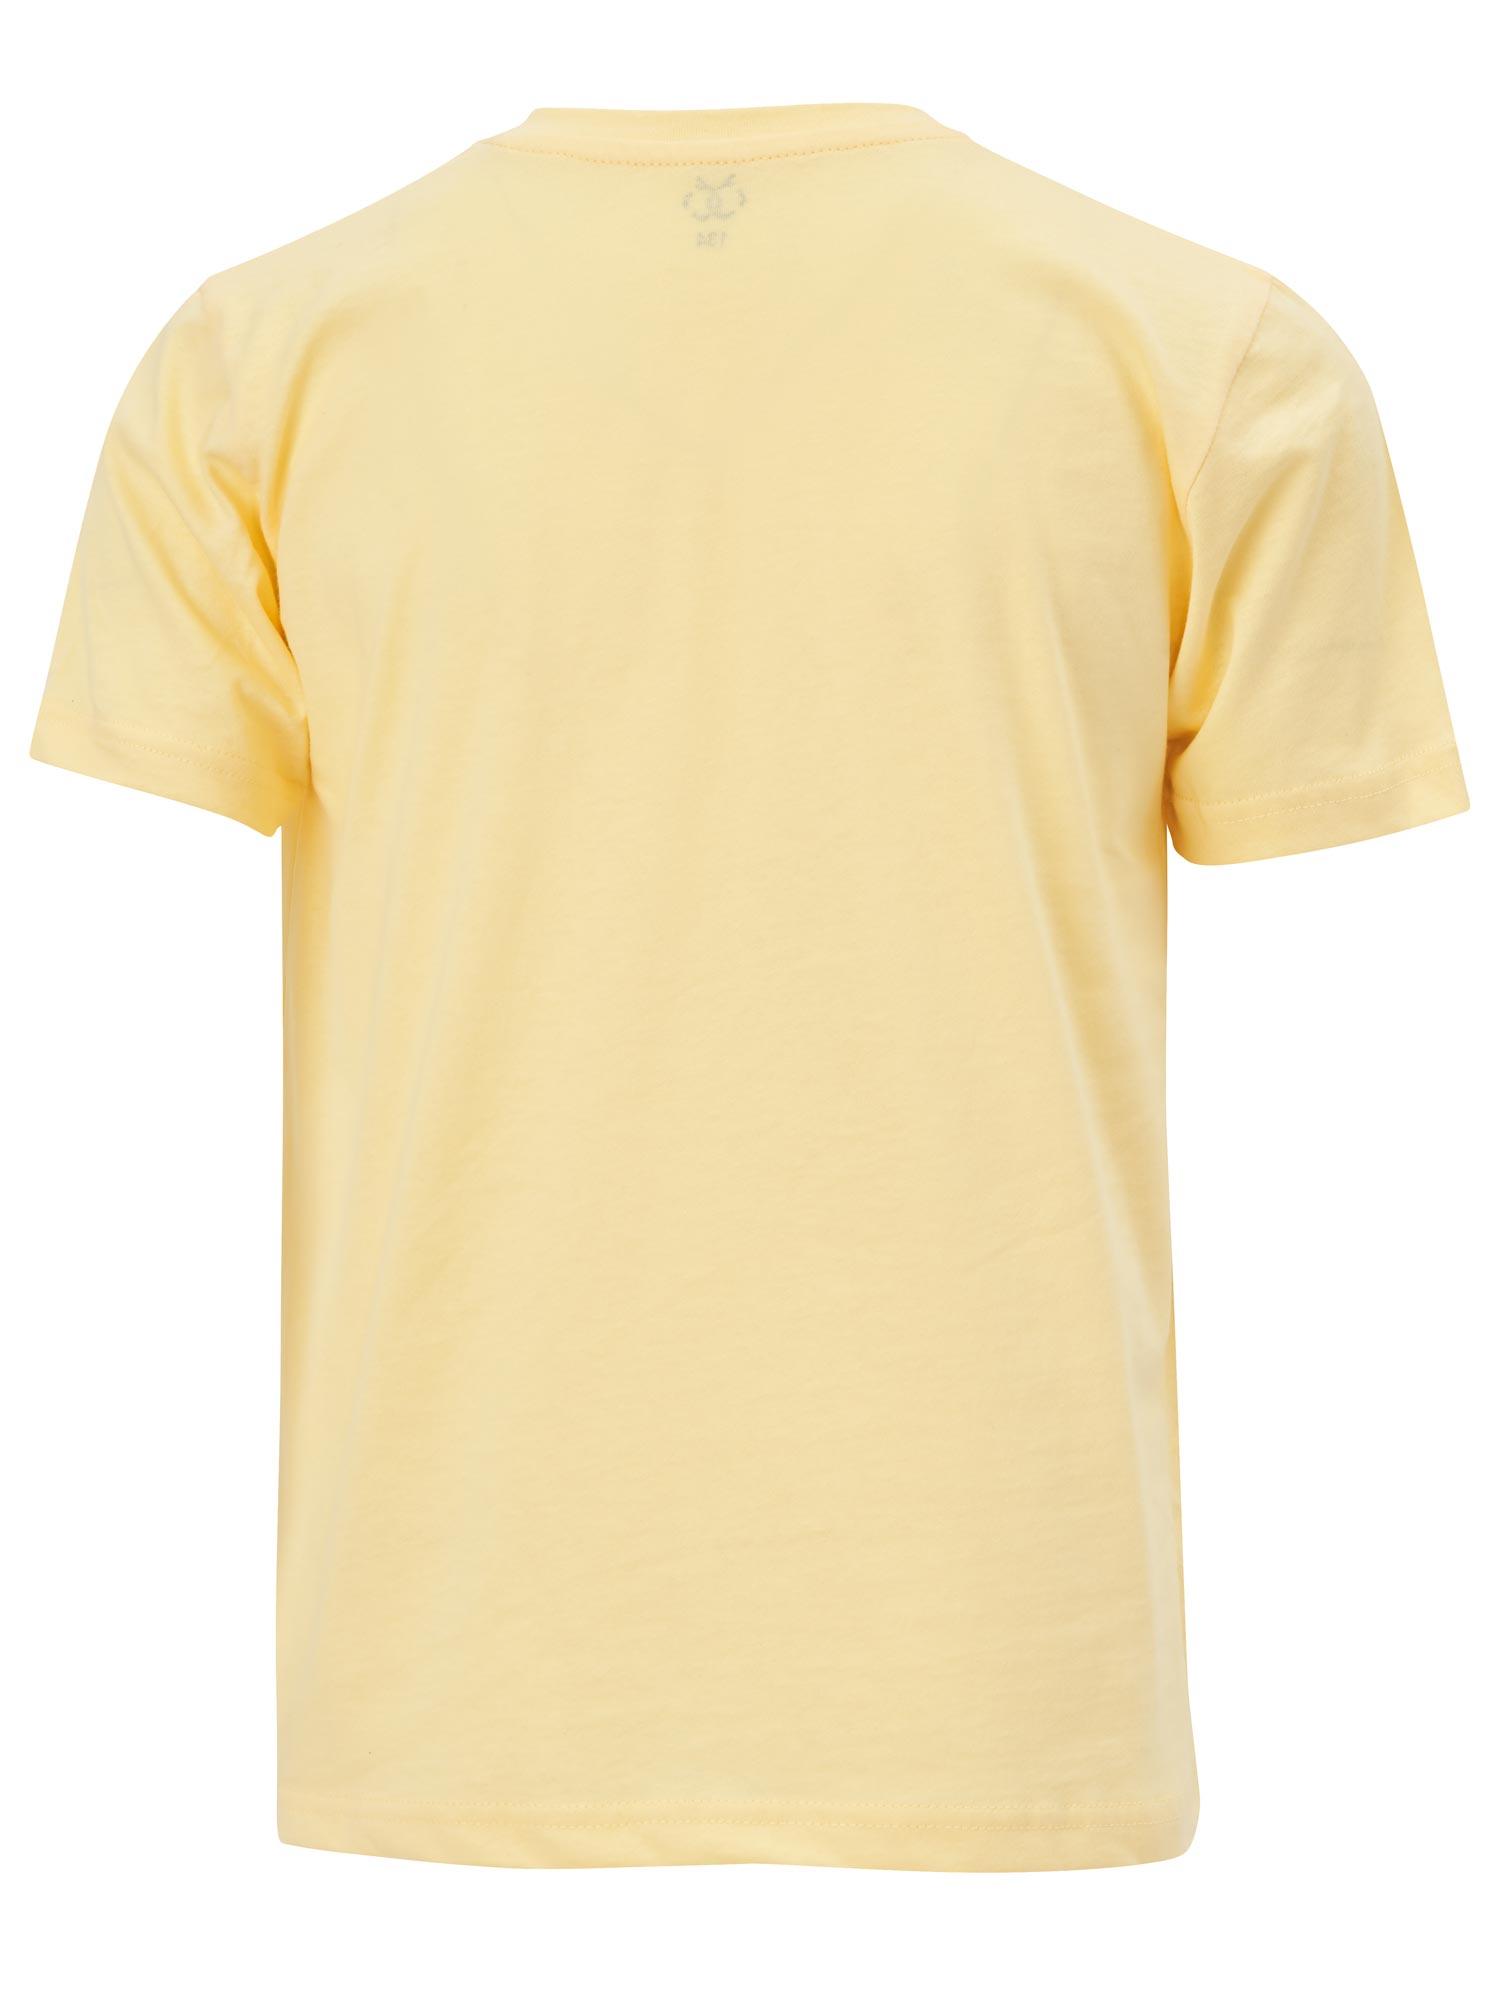 Selected image for BRILLE Majica za devojčice Bear žuta